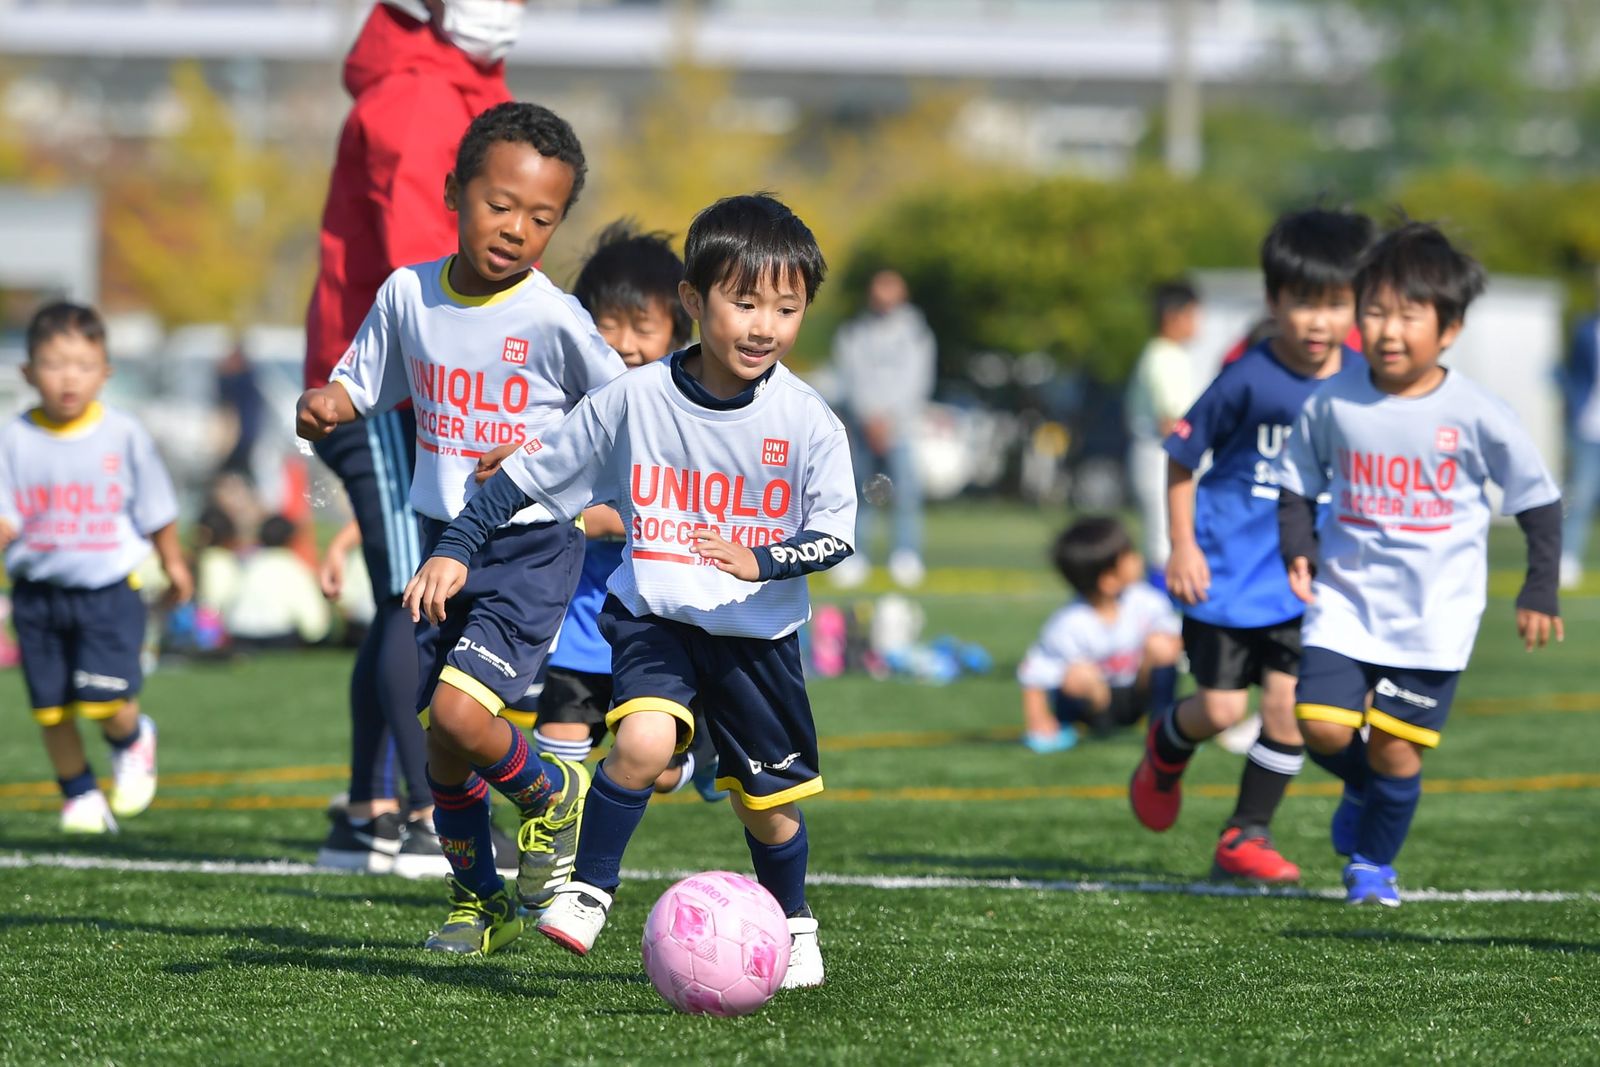 ユニクロの子ども向けサッカープログラム キャプテンに内田篤人が就任 Wwdjapan